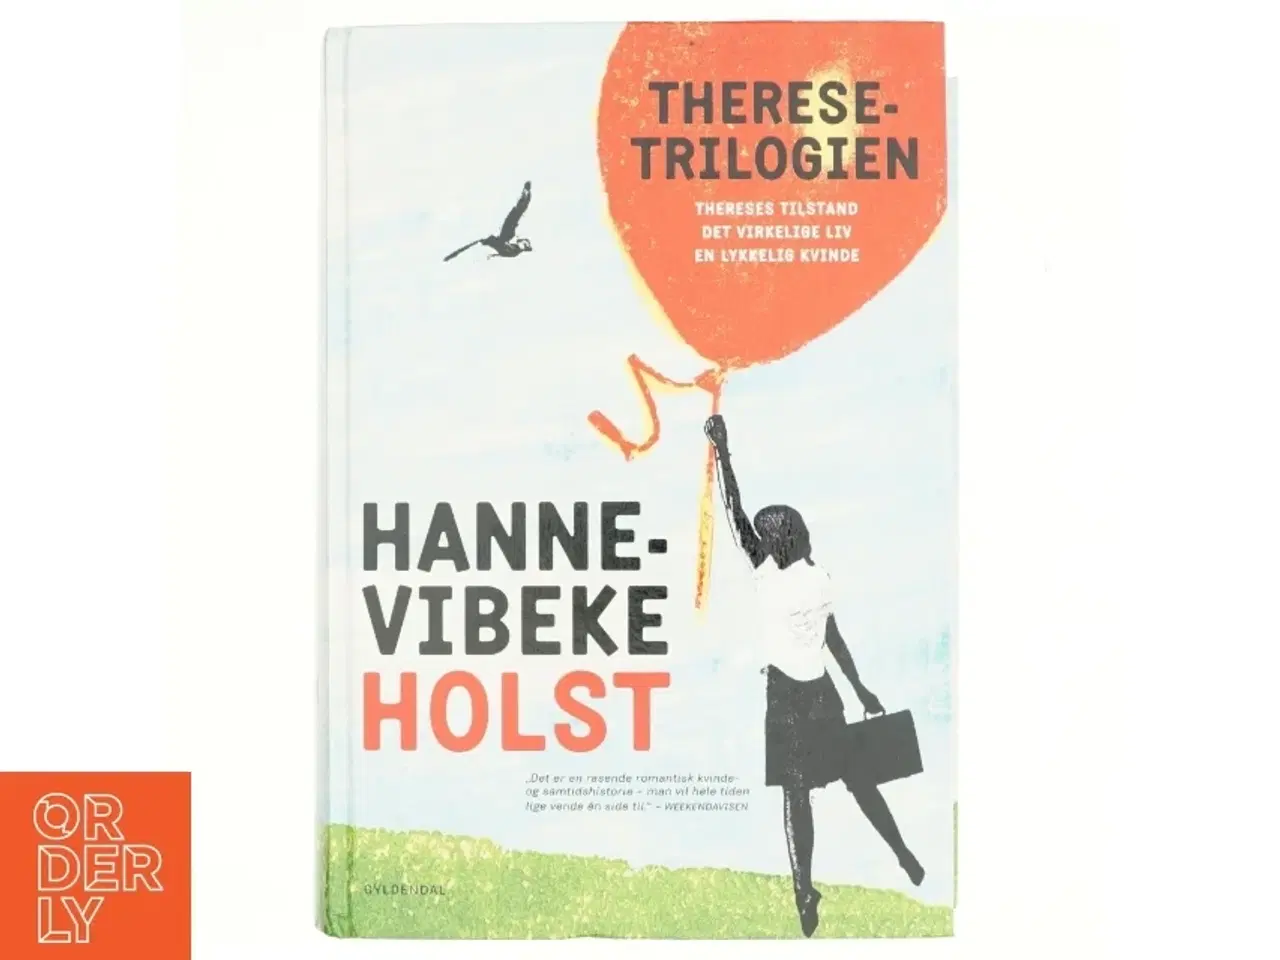 Billede 1 - Therese-trilogien af Hanne-Vibeke Holst